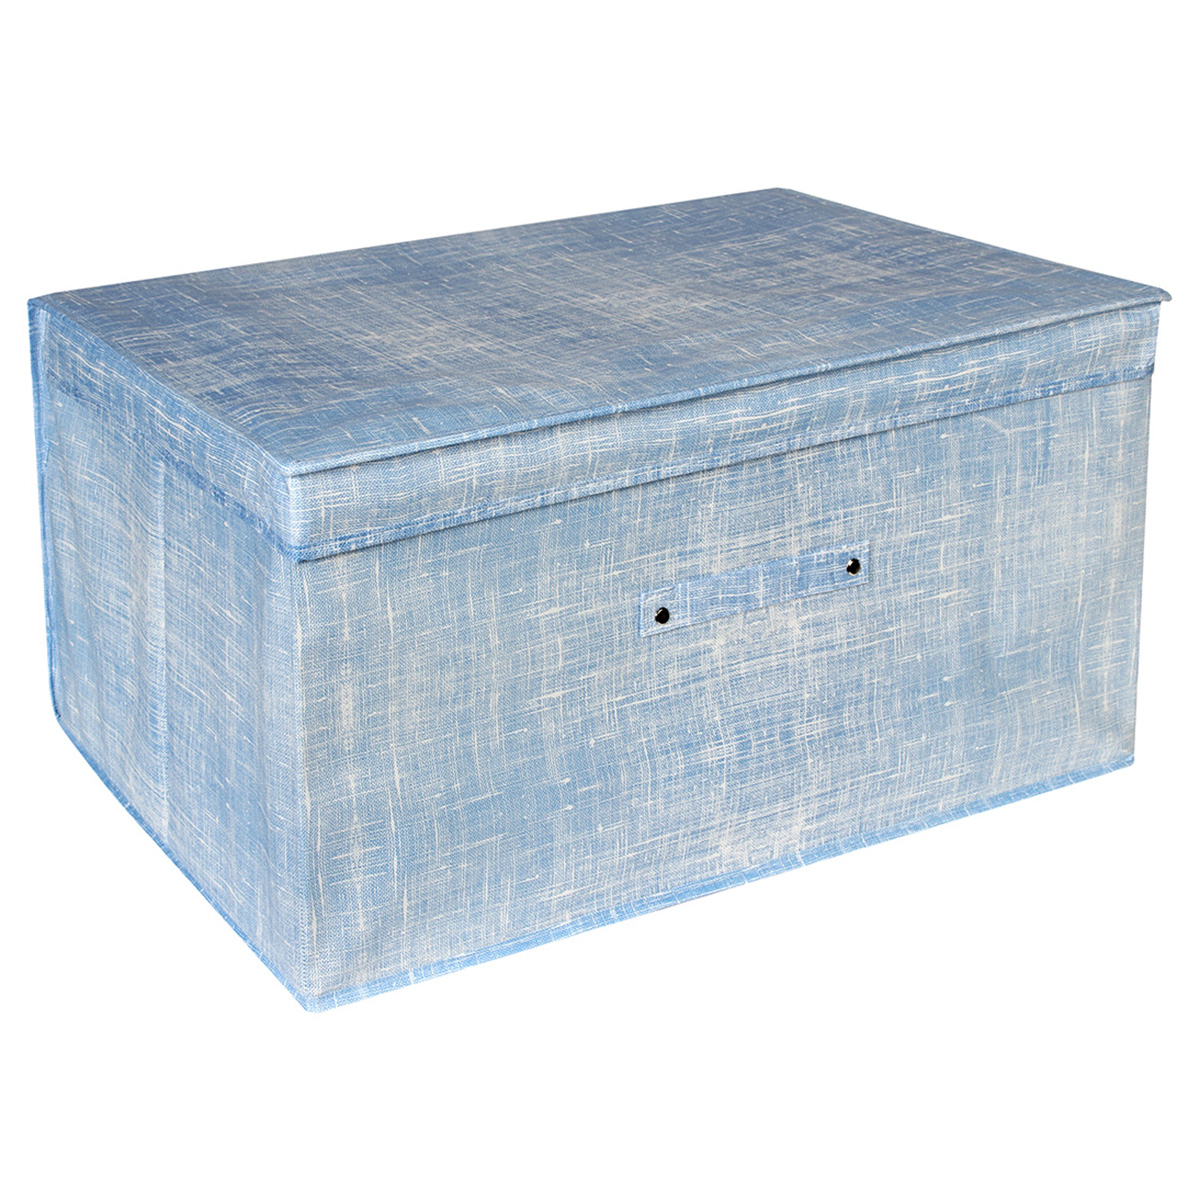 Κουτί αποθήκευσης πτυσσόμενο 60Χ40Χ30 εκ. μπλε - KESKOR 57940-2